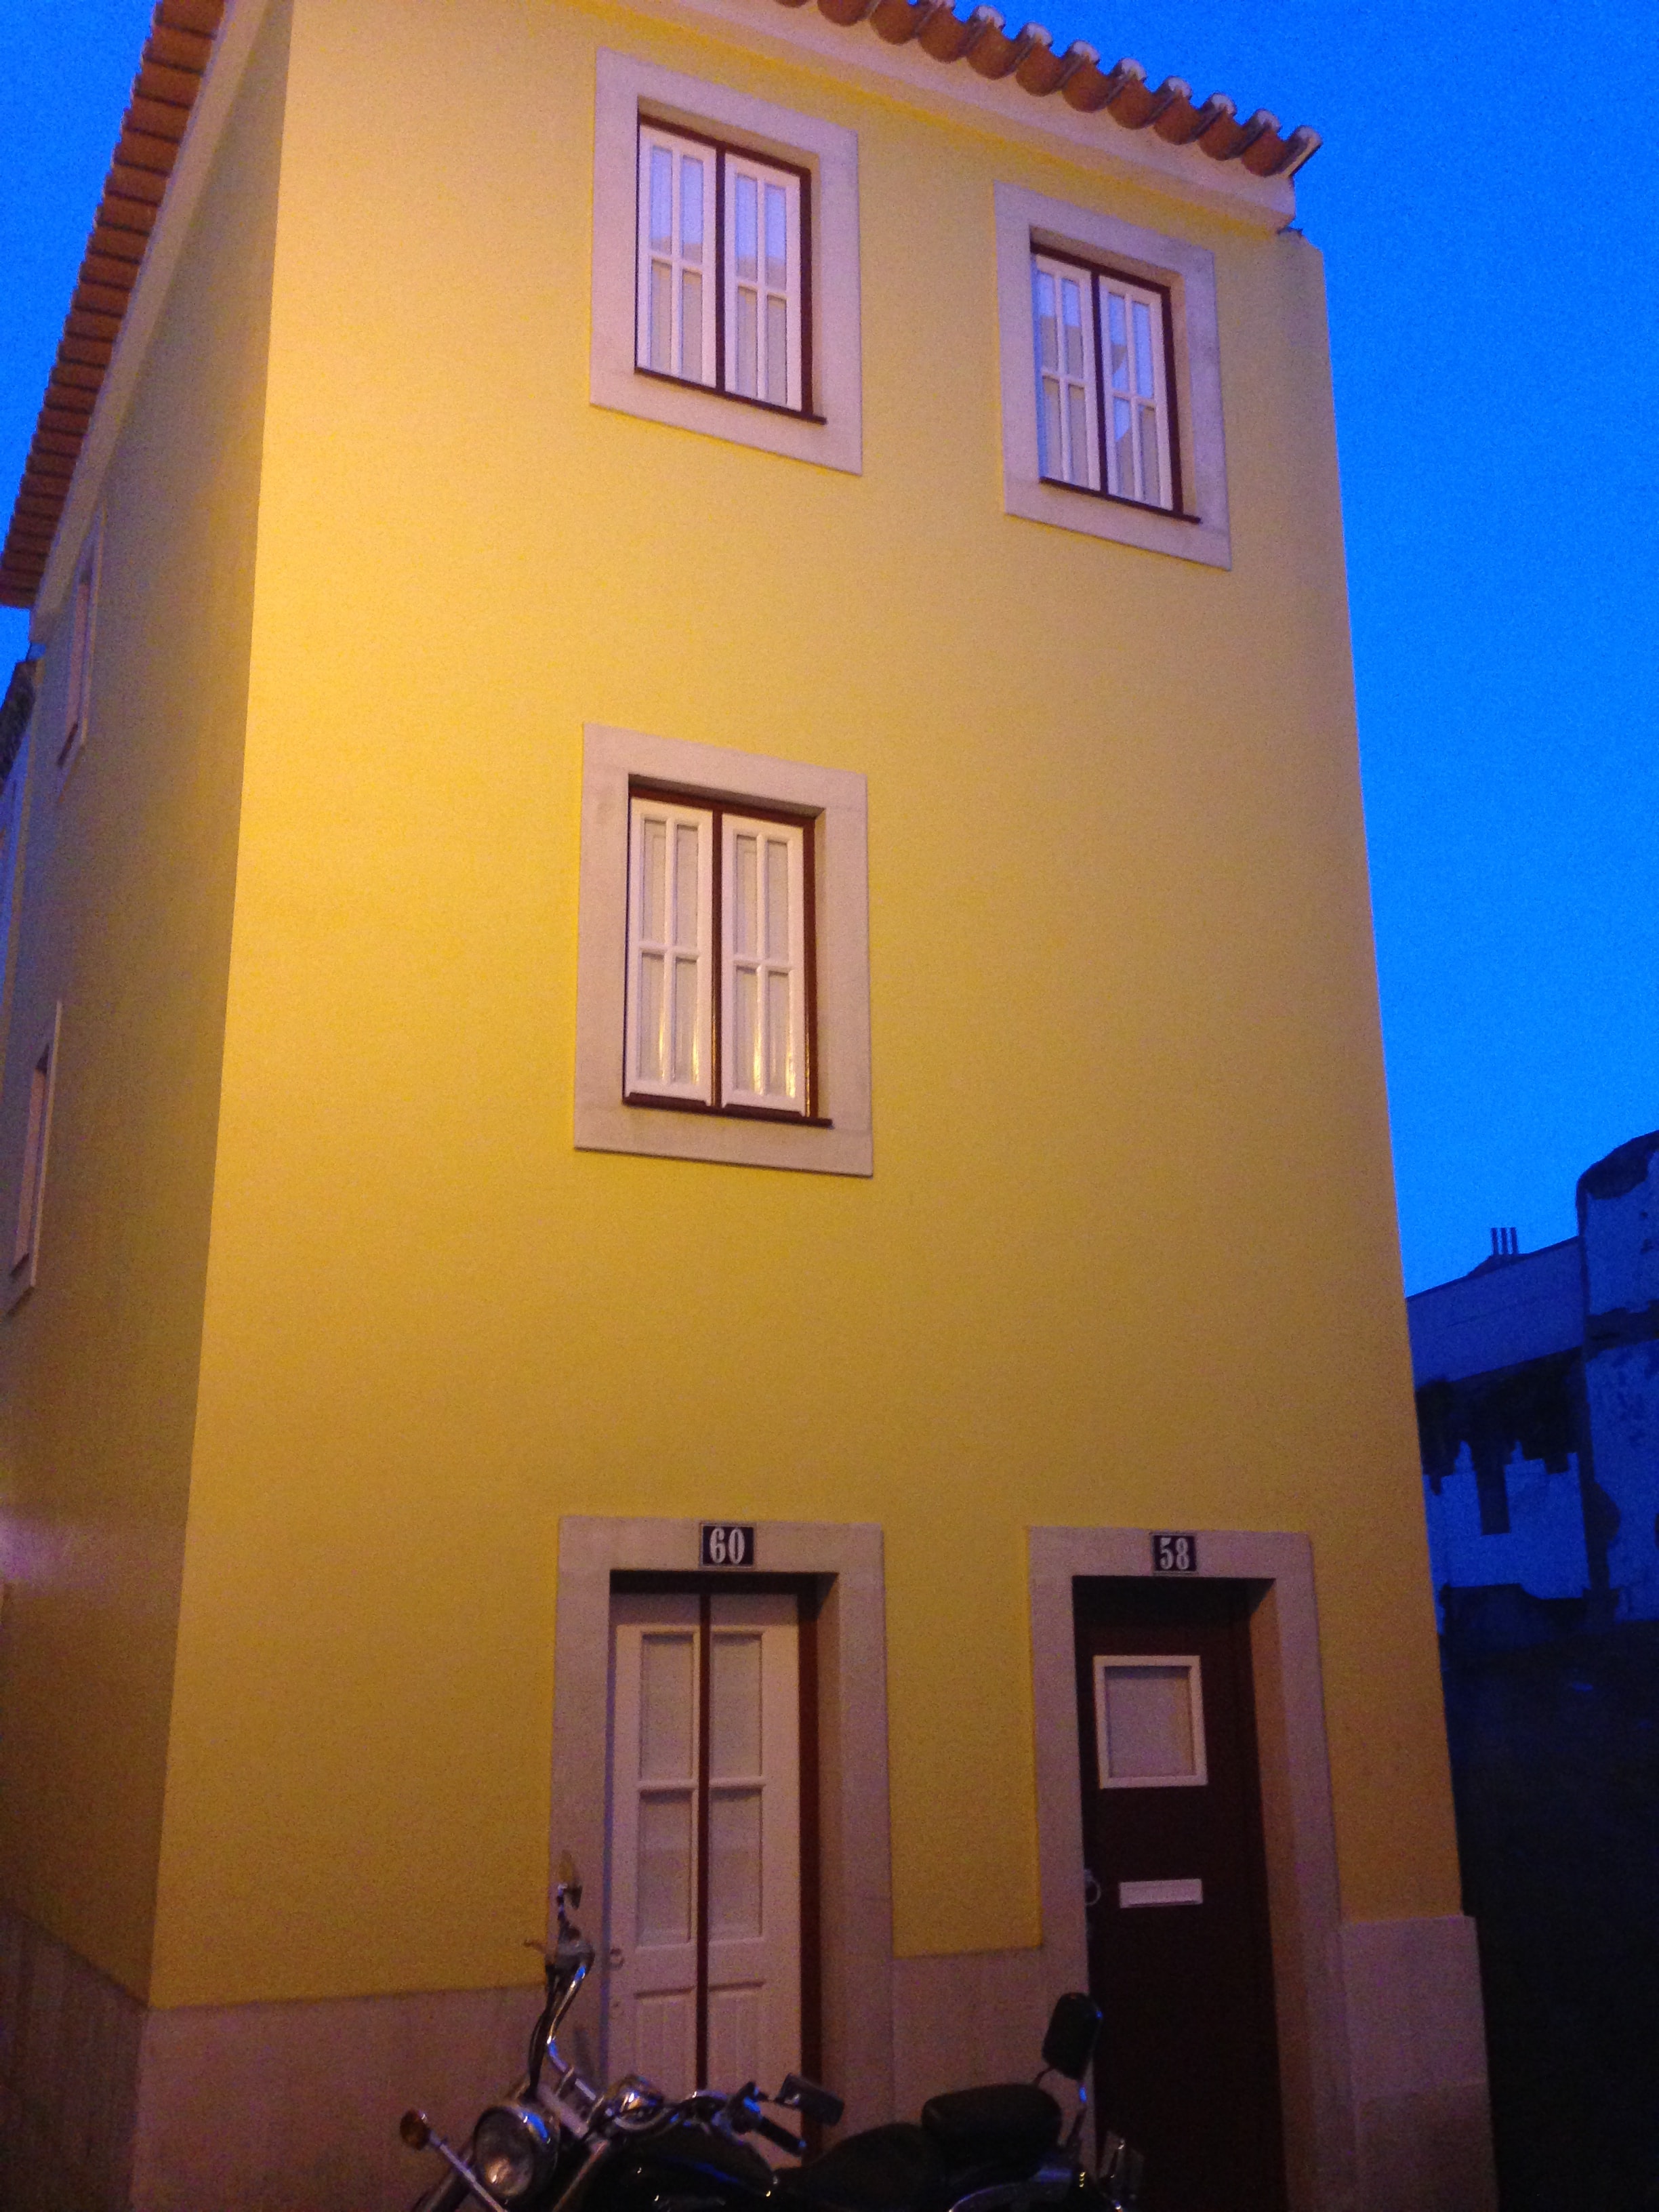 Jolie façade à Lisbonne